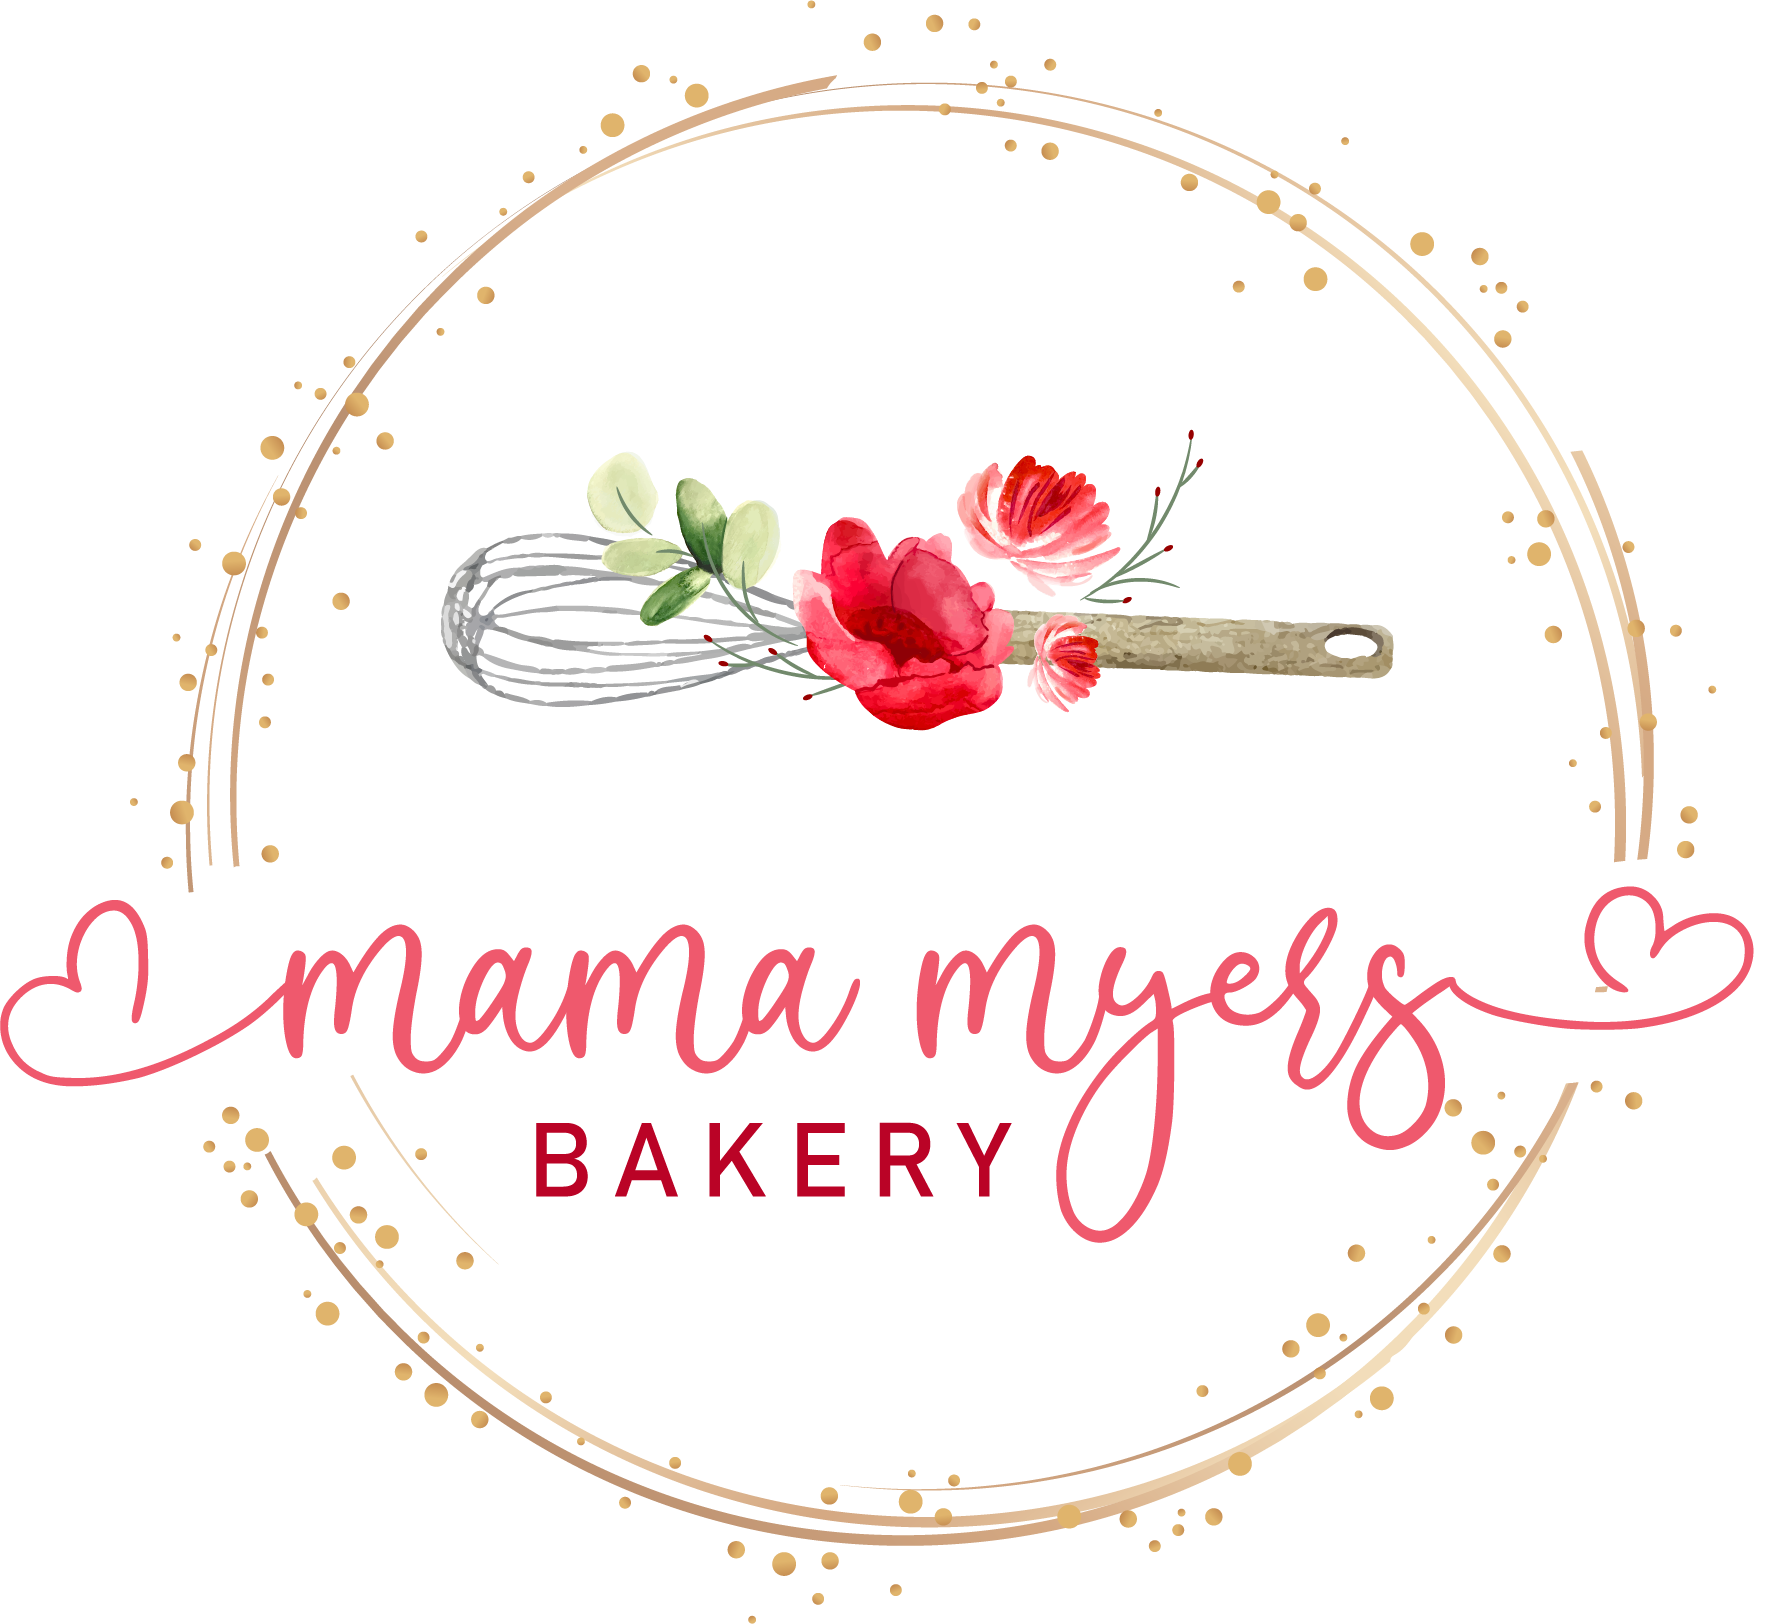 Details more than 60 mom's bakery logo latest - ceg.edu.vn